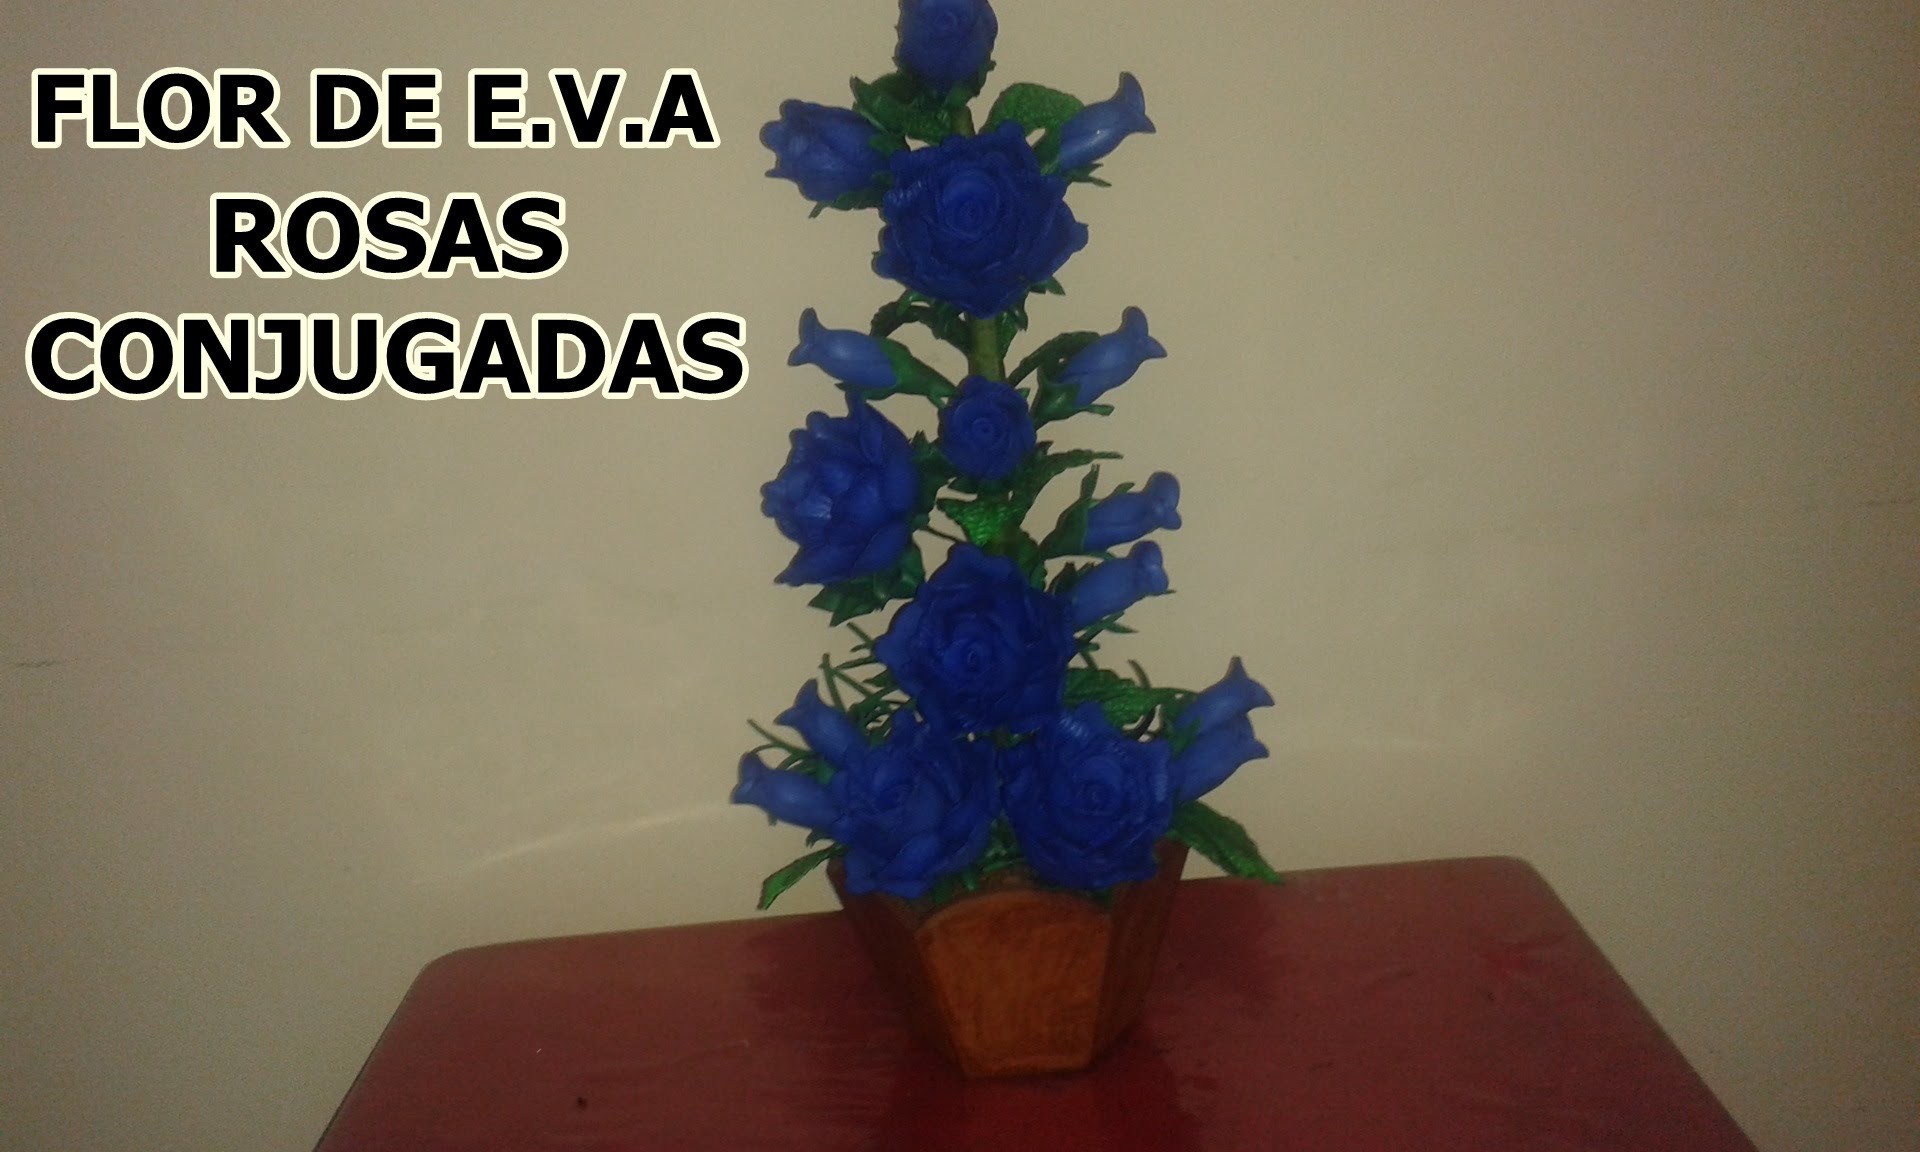 Flor de e.v.a ROSAS CONJUGADAS AZUIS